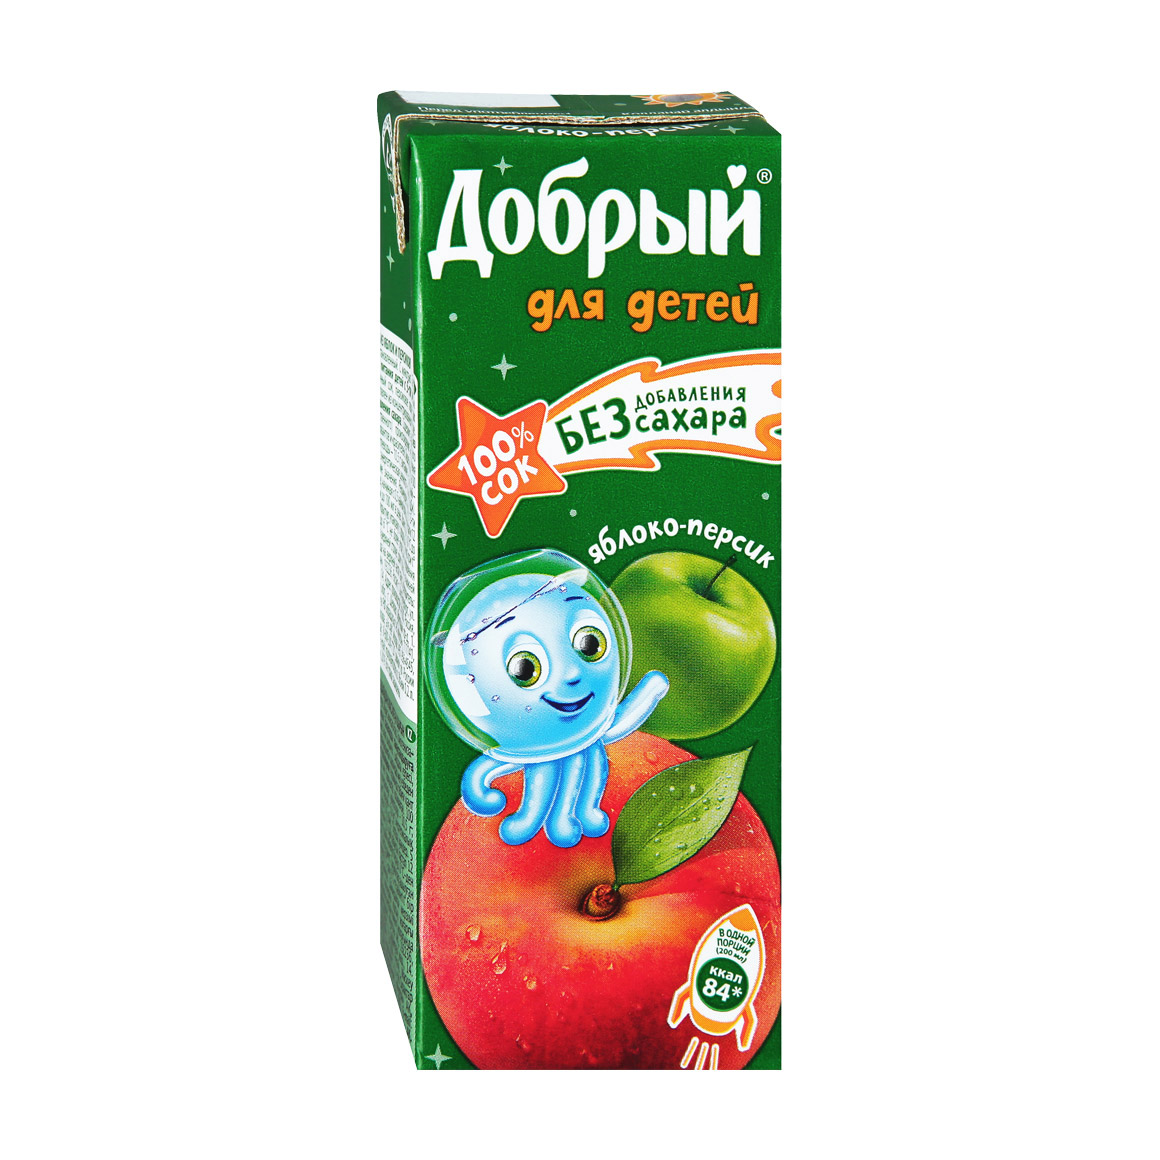 Добрый сок яблоко - персик TetraPak 0,2л